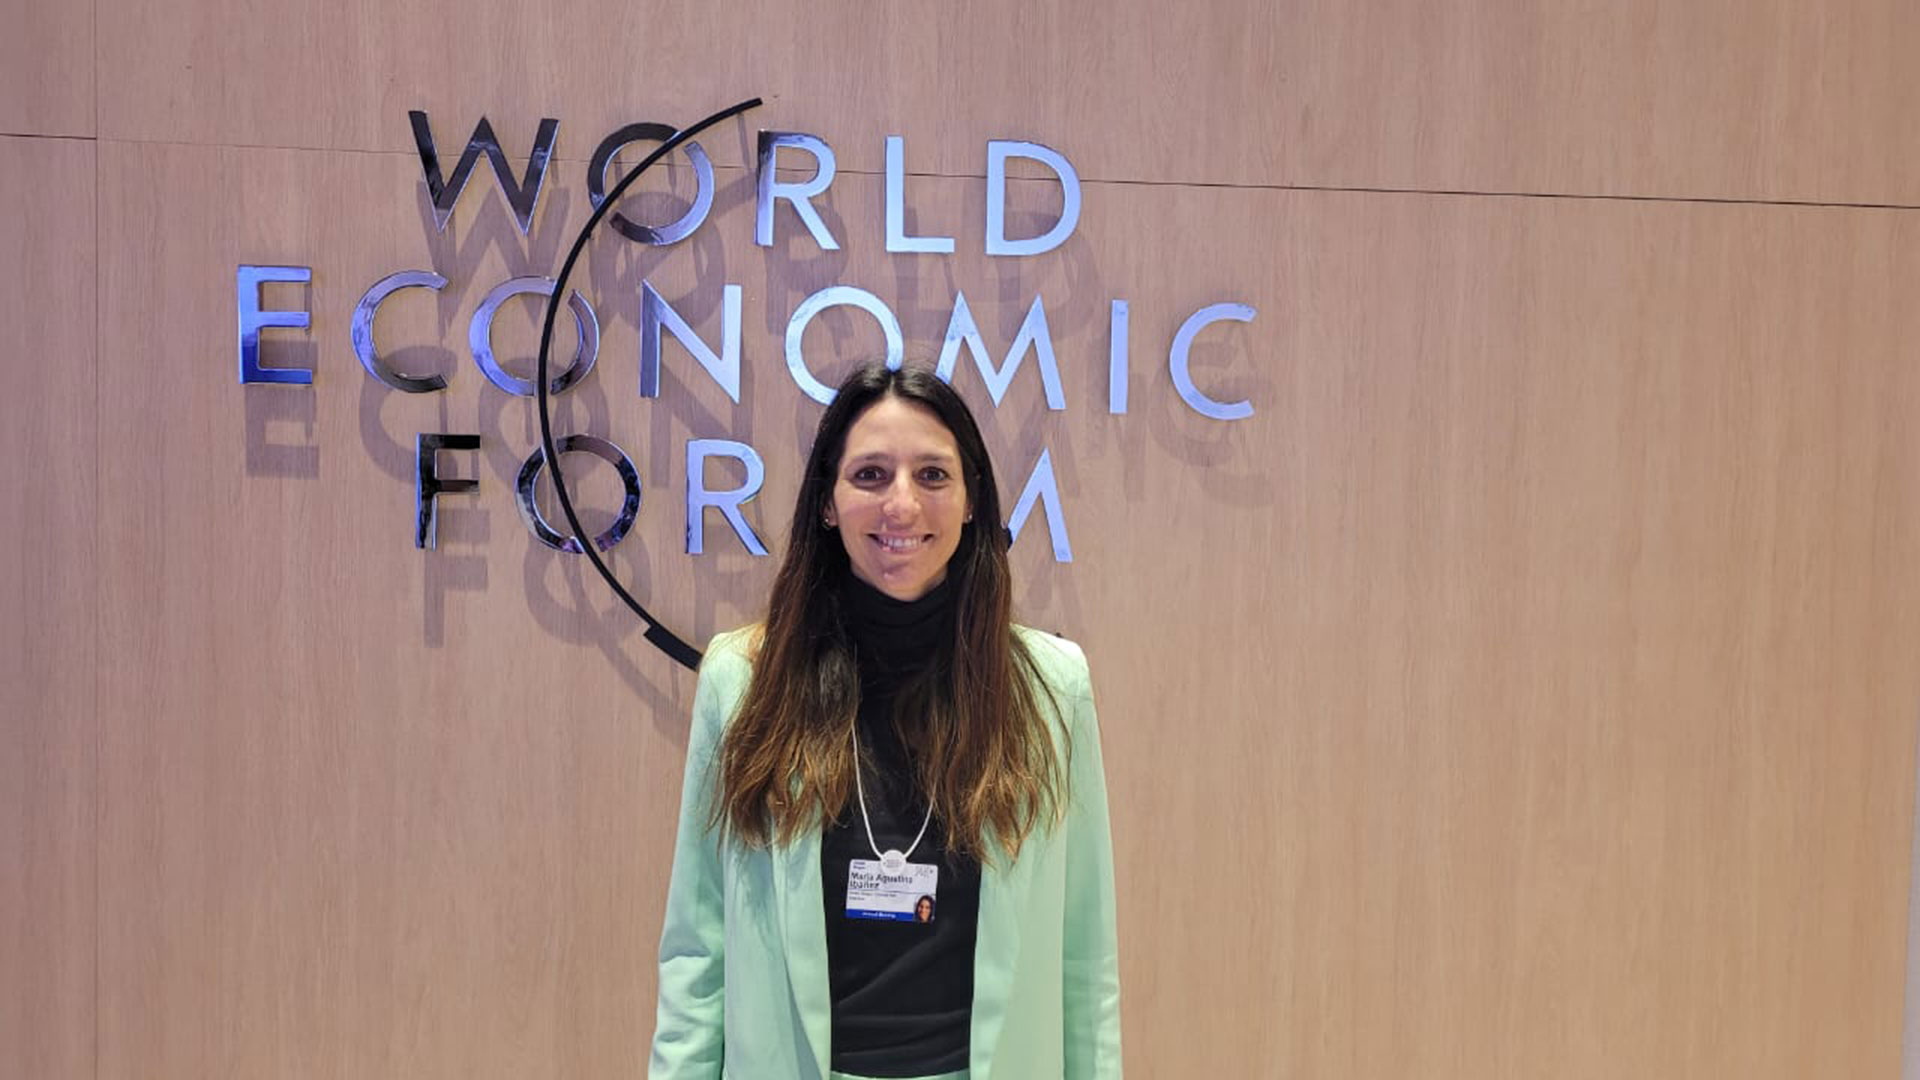 "Trabajamos en el sector de tecnología, más allá de la coyuntura y la crisis económica mundial y también local; lo que nos permite estar en constante innovación", dijo a Infobae María Agustina Ibañez